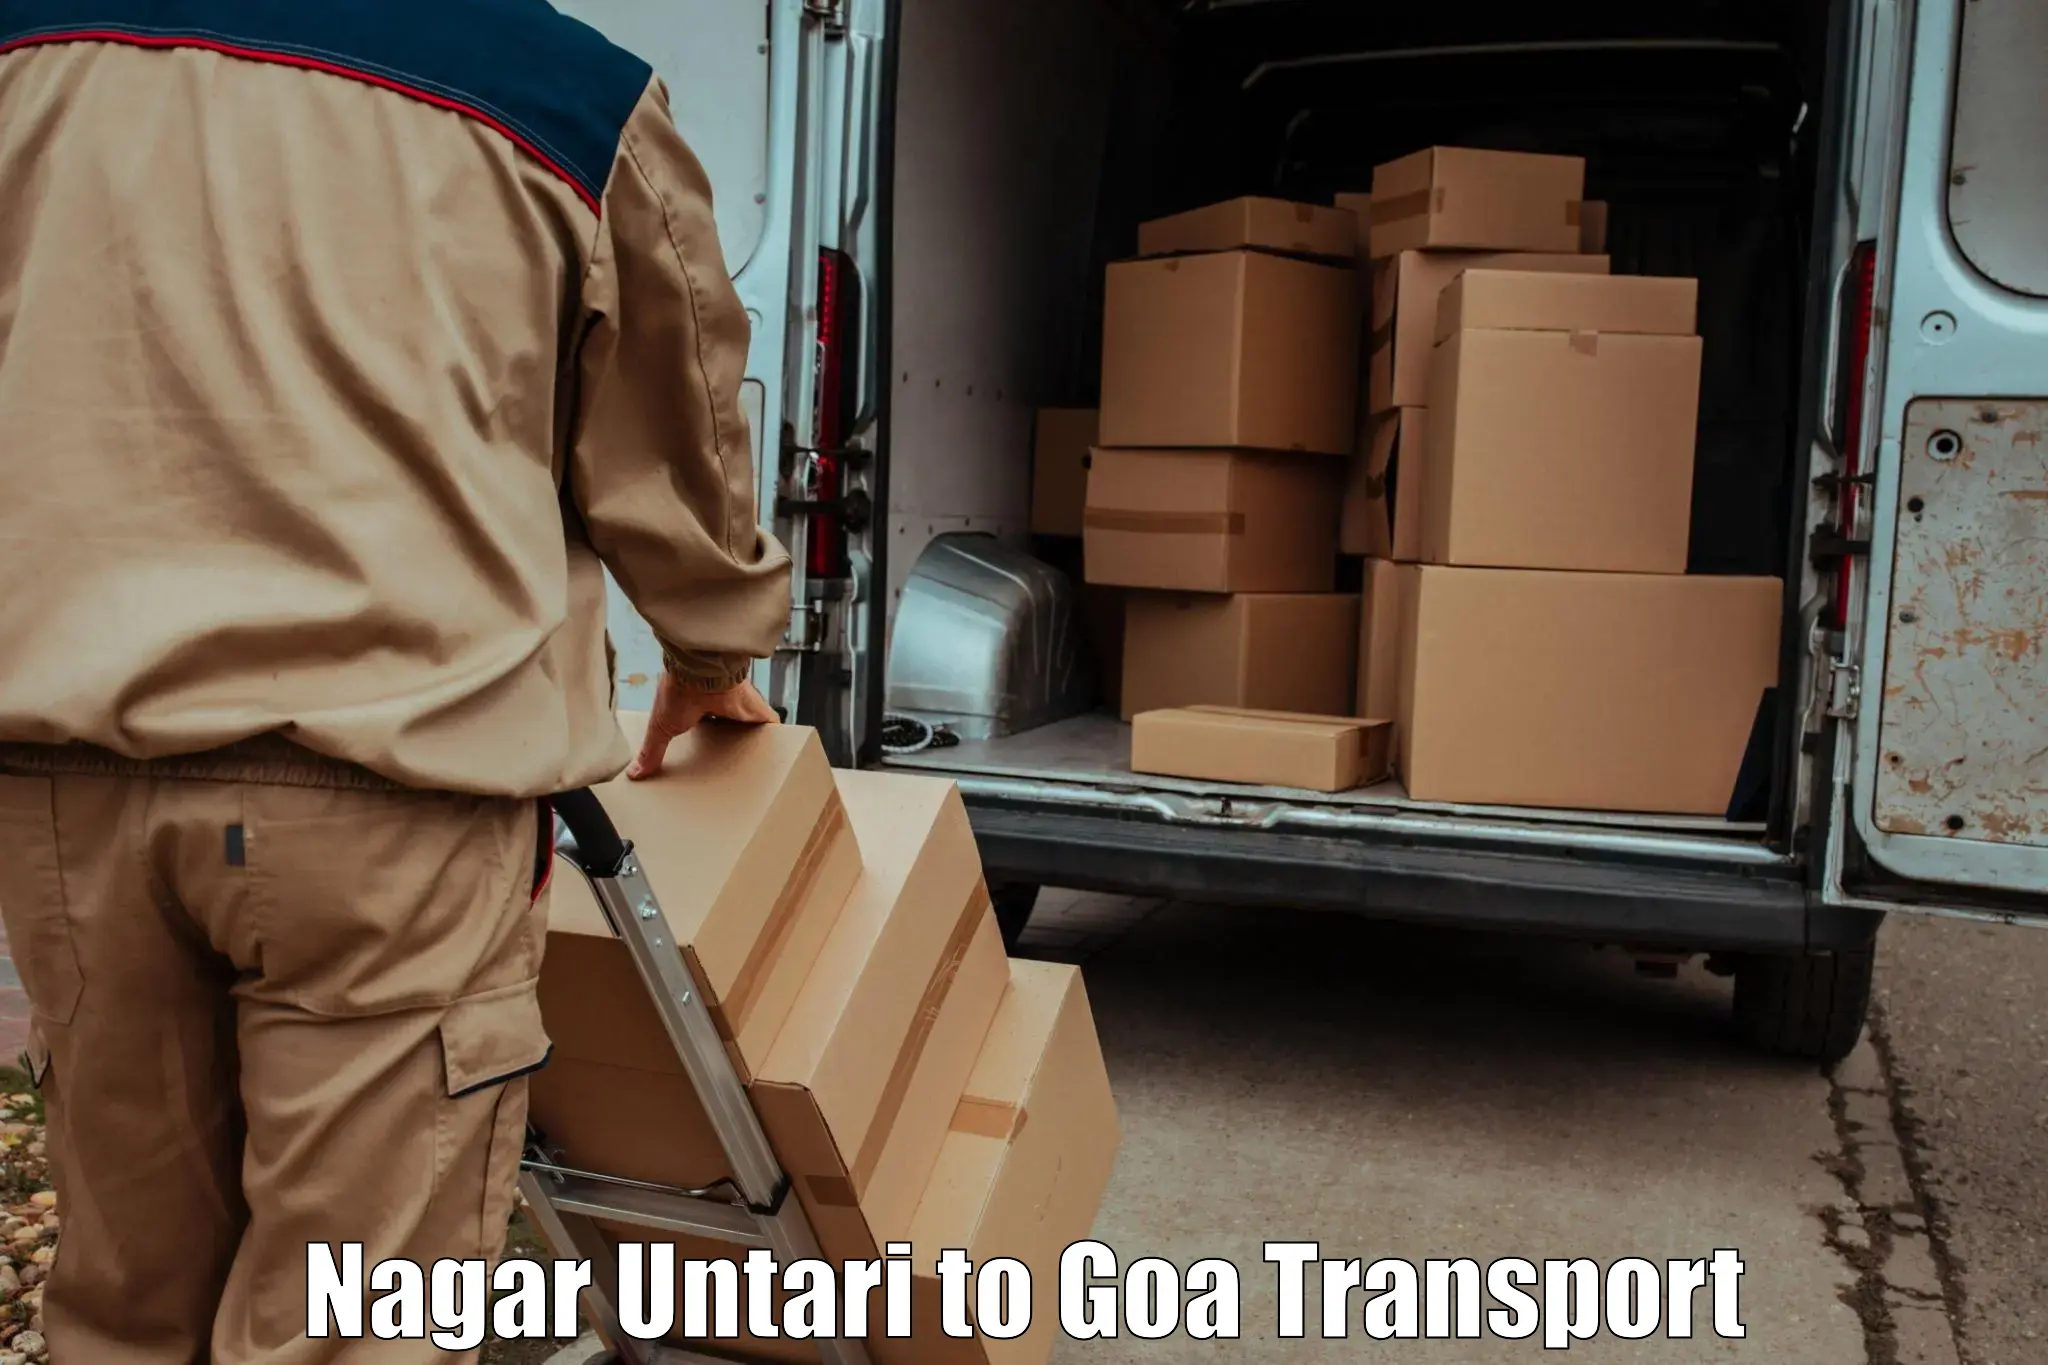 Transportation services Nagar Untari to Mormugao Port